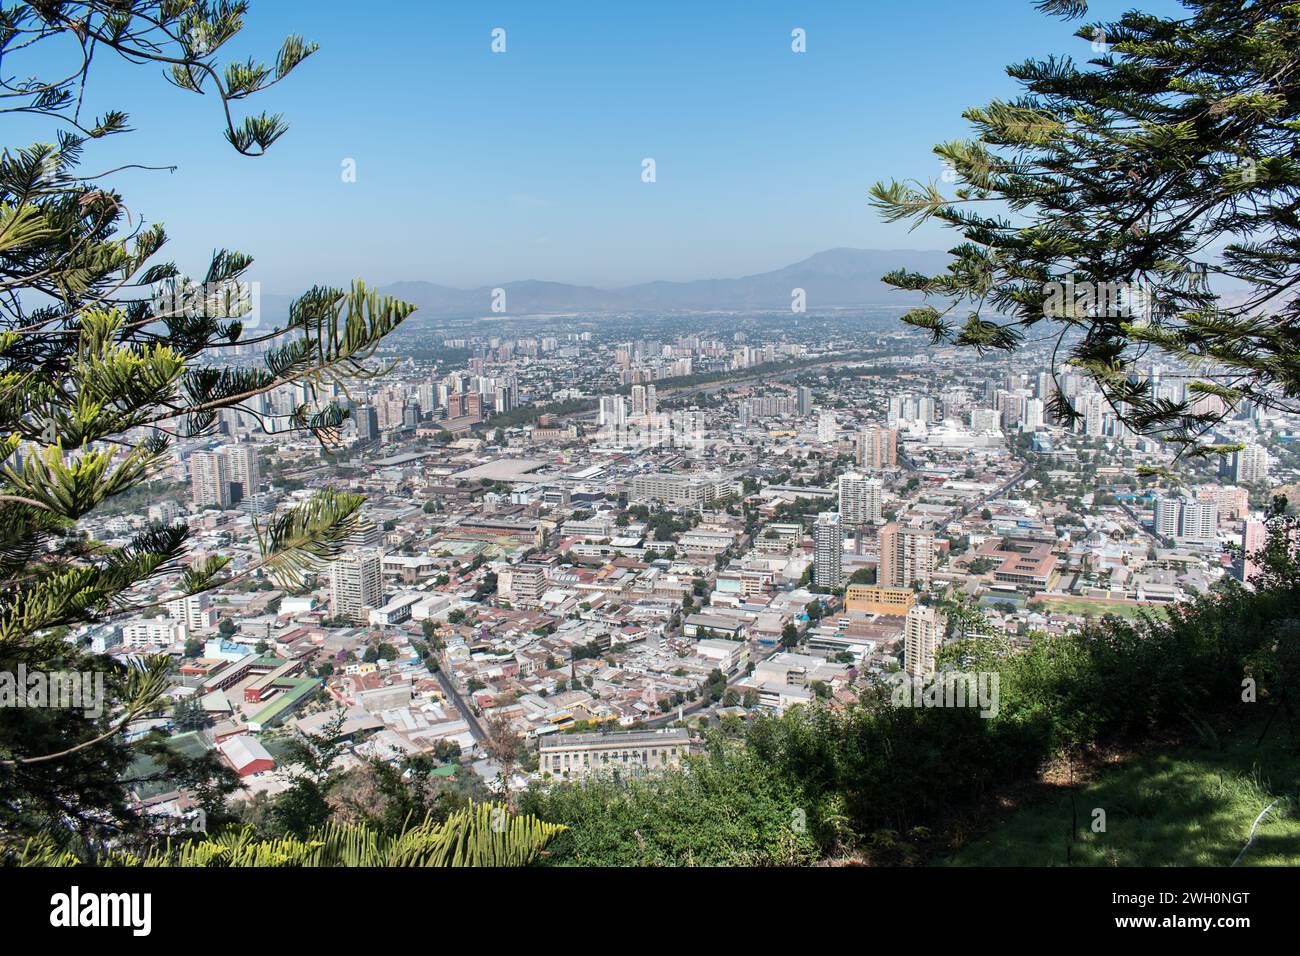 La splendida vista dalla collina di San Cristobal a Santiago offre vedute panoramiche del paesaggio urbano incorniciato dalle maestose Ande in lontananza. Foto Stock